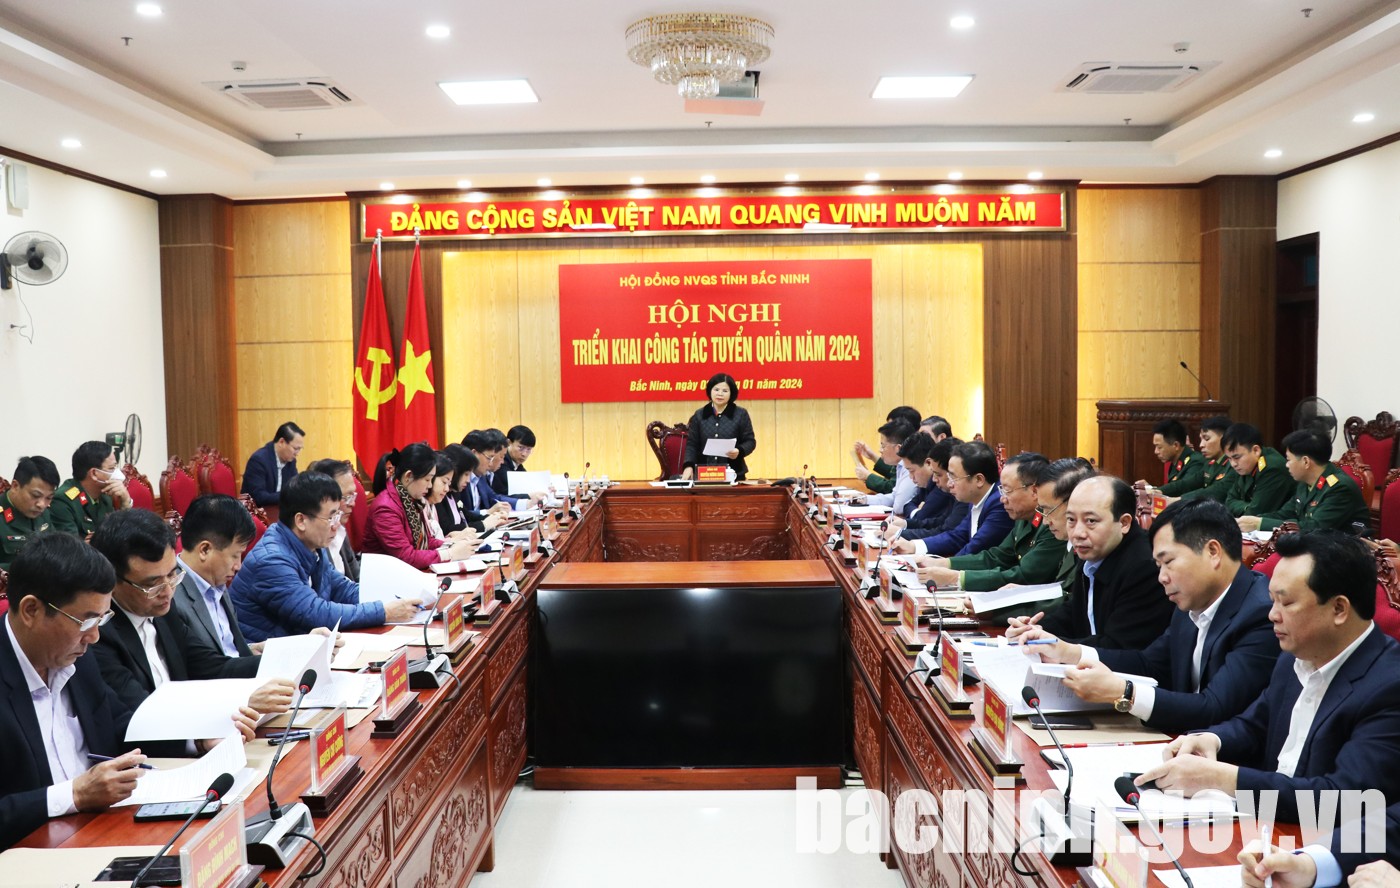 Hội đồng nghĩa vụ quân sự tỉnh Bắc Ninh triển khai công tác tuyển quân năm 2024